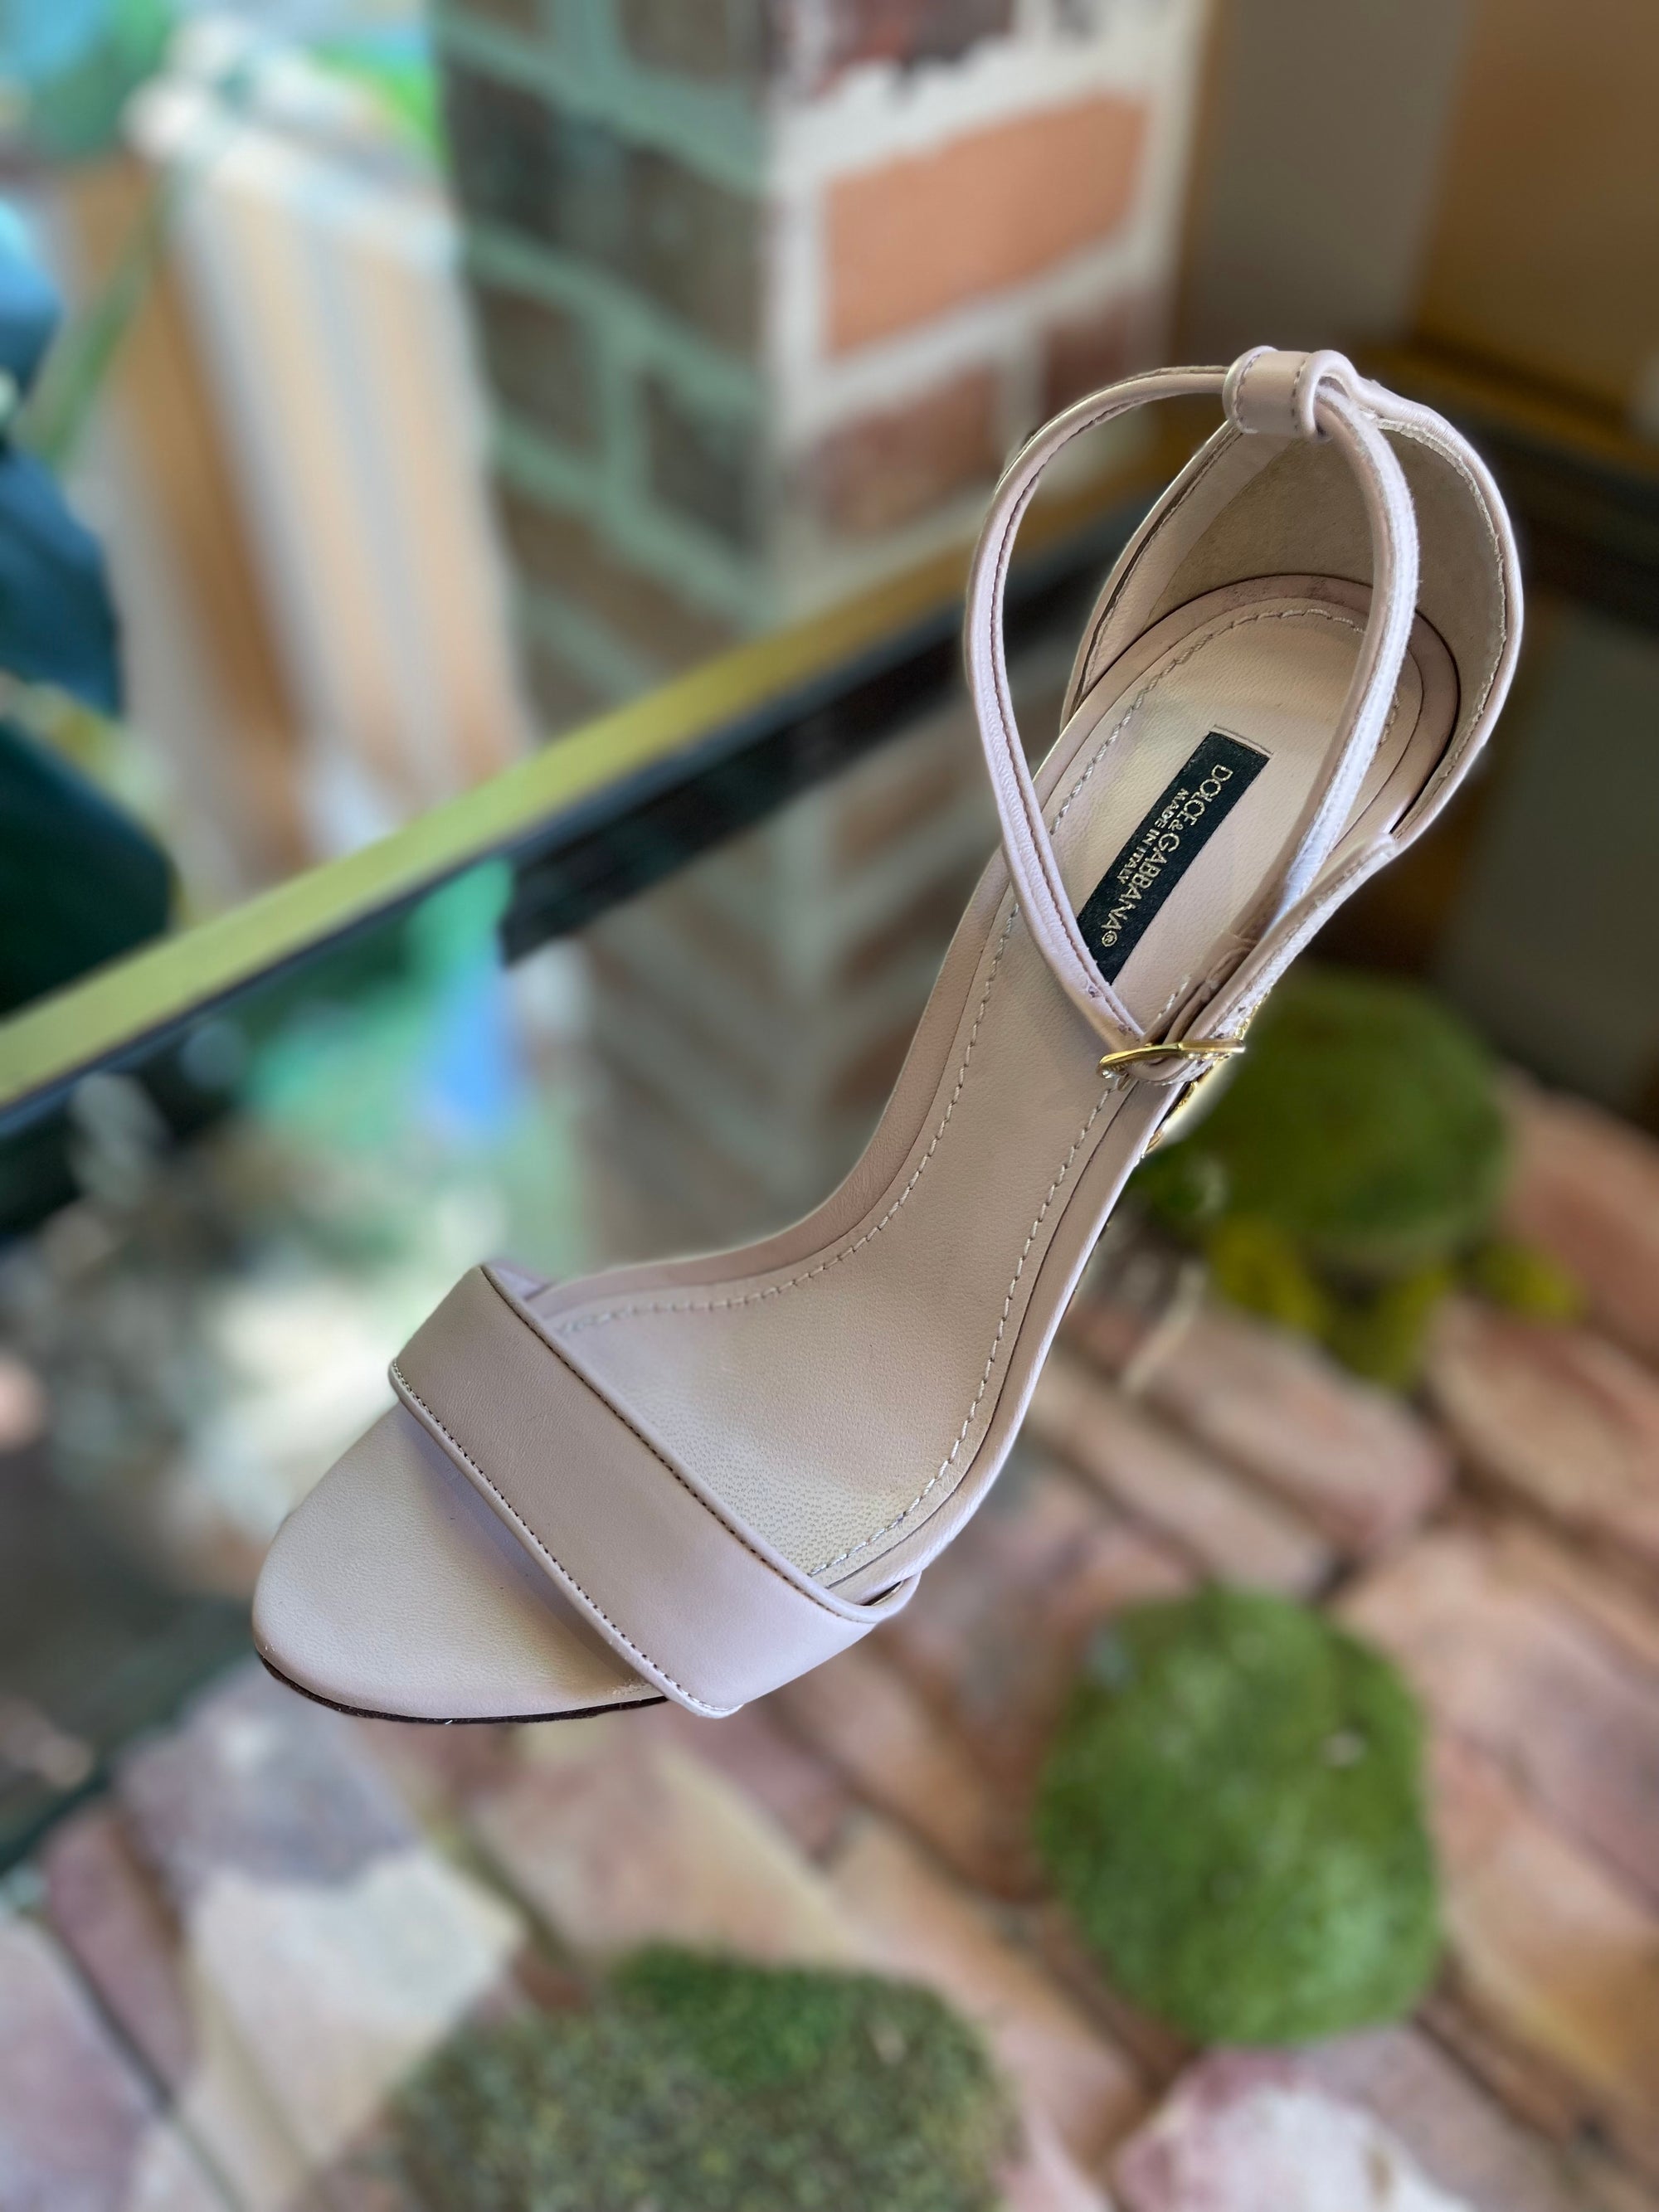 DOLCE & GABBANA Pink Sculpted High Heels Sandals 39.5